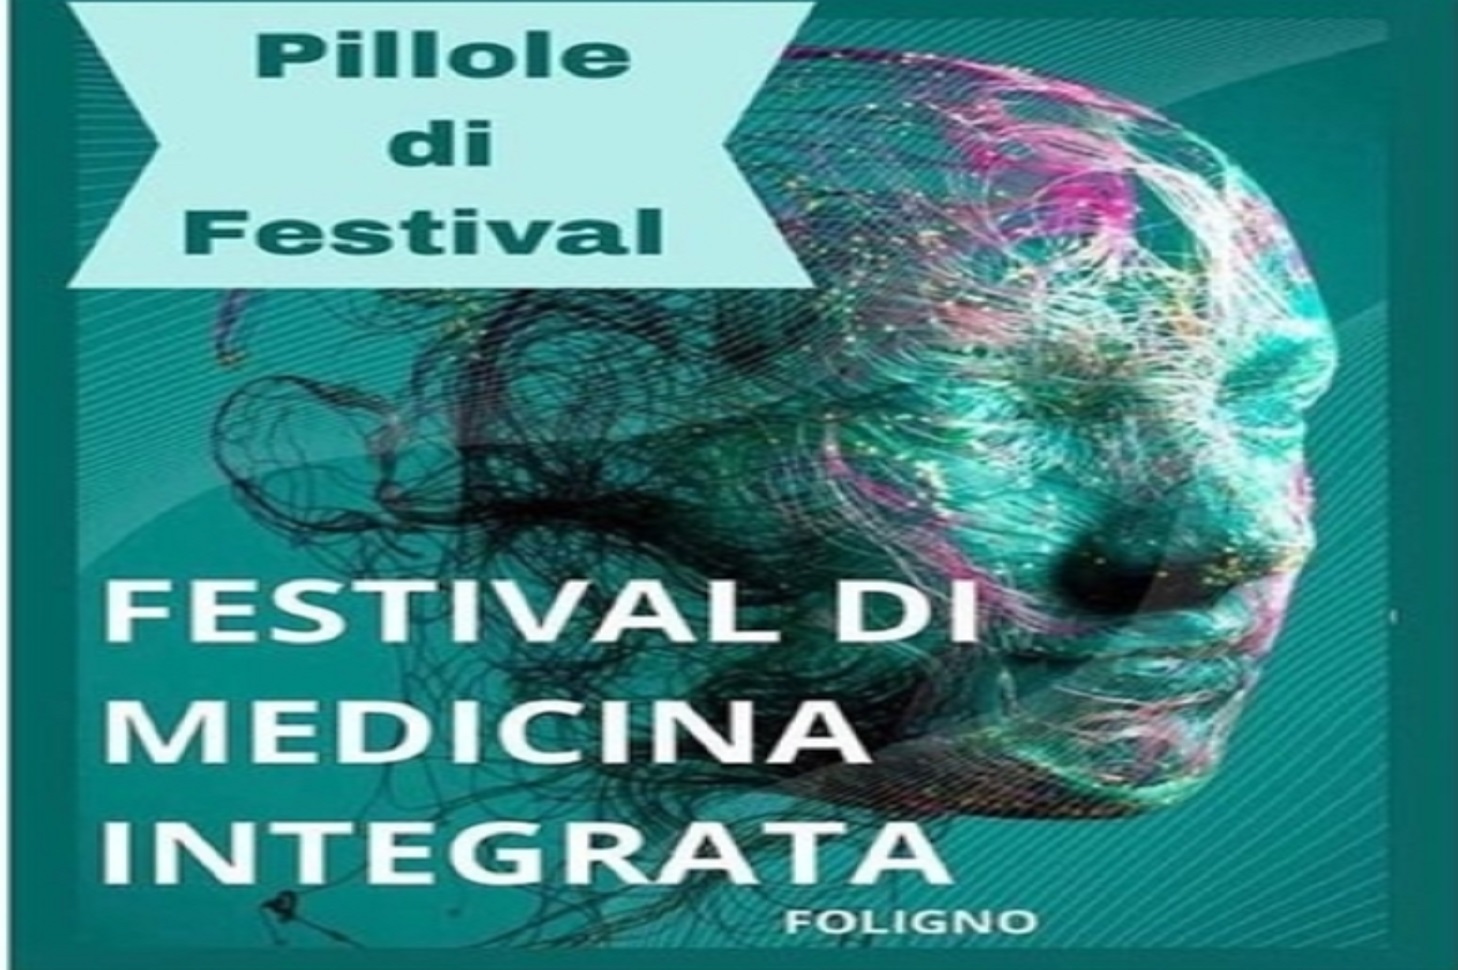 Pillole di Festival_Foligno